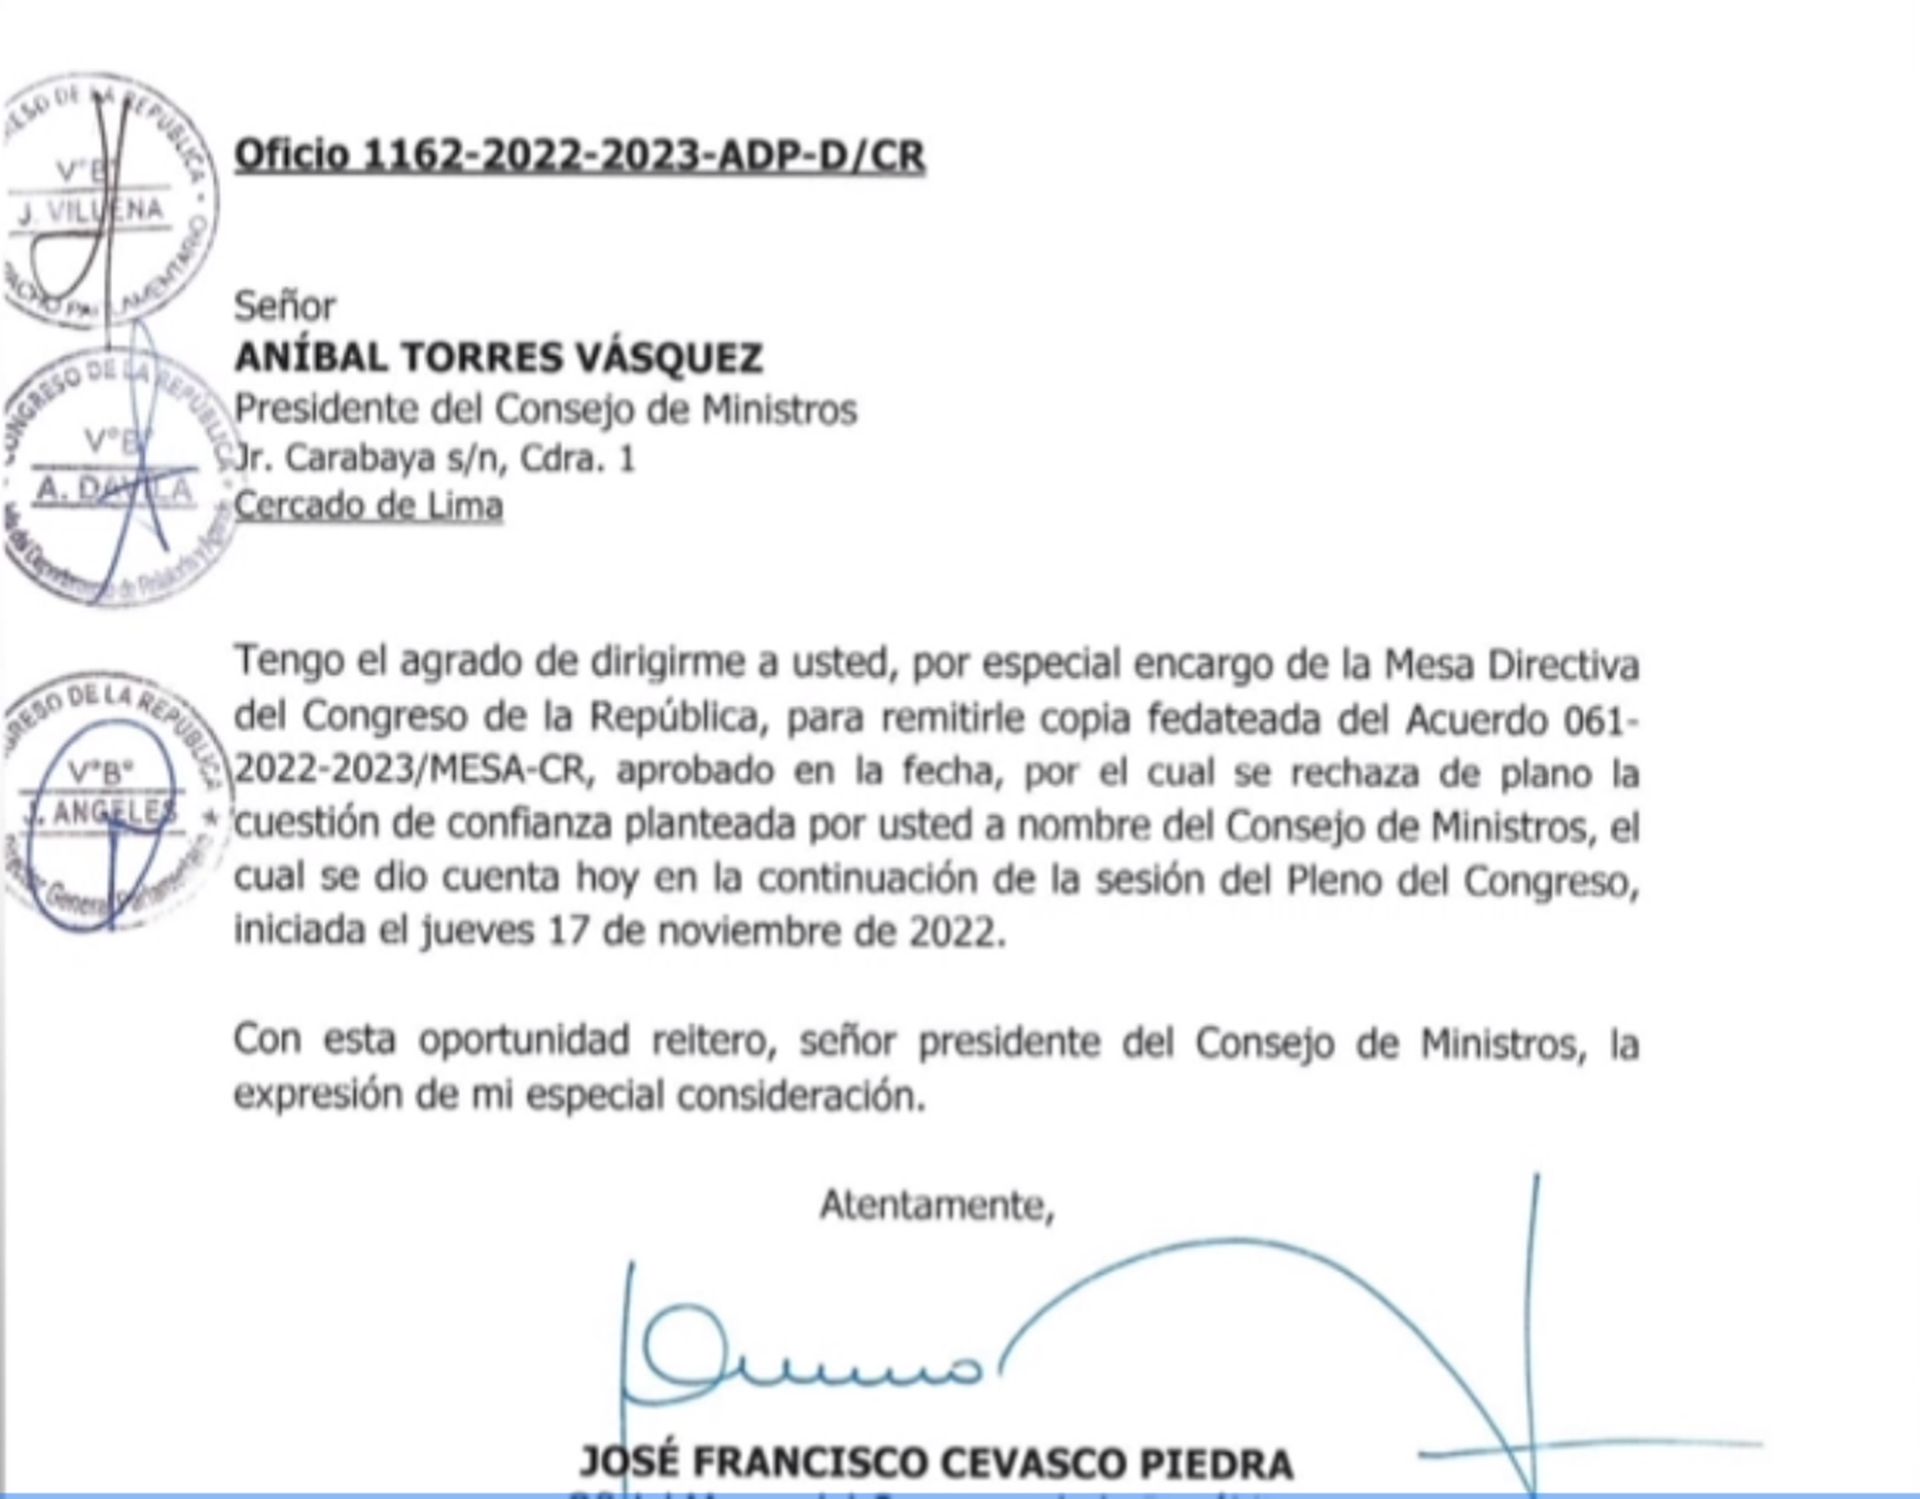 Congreso notifica a Aníbal Torres sobre rechazo de cuestión de confianza